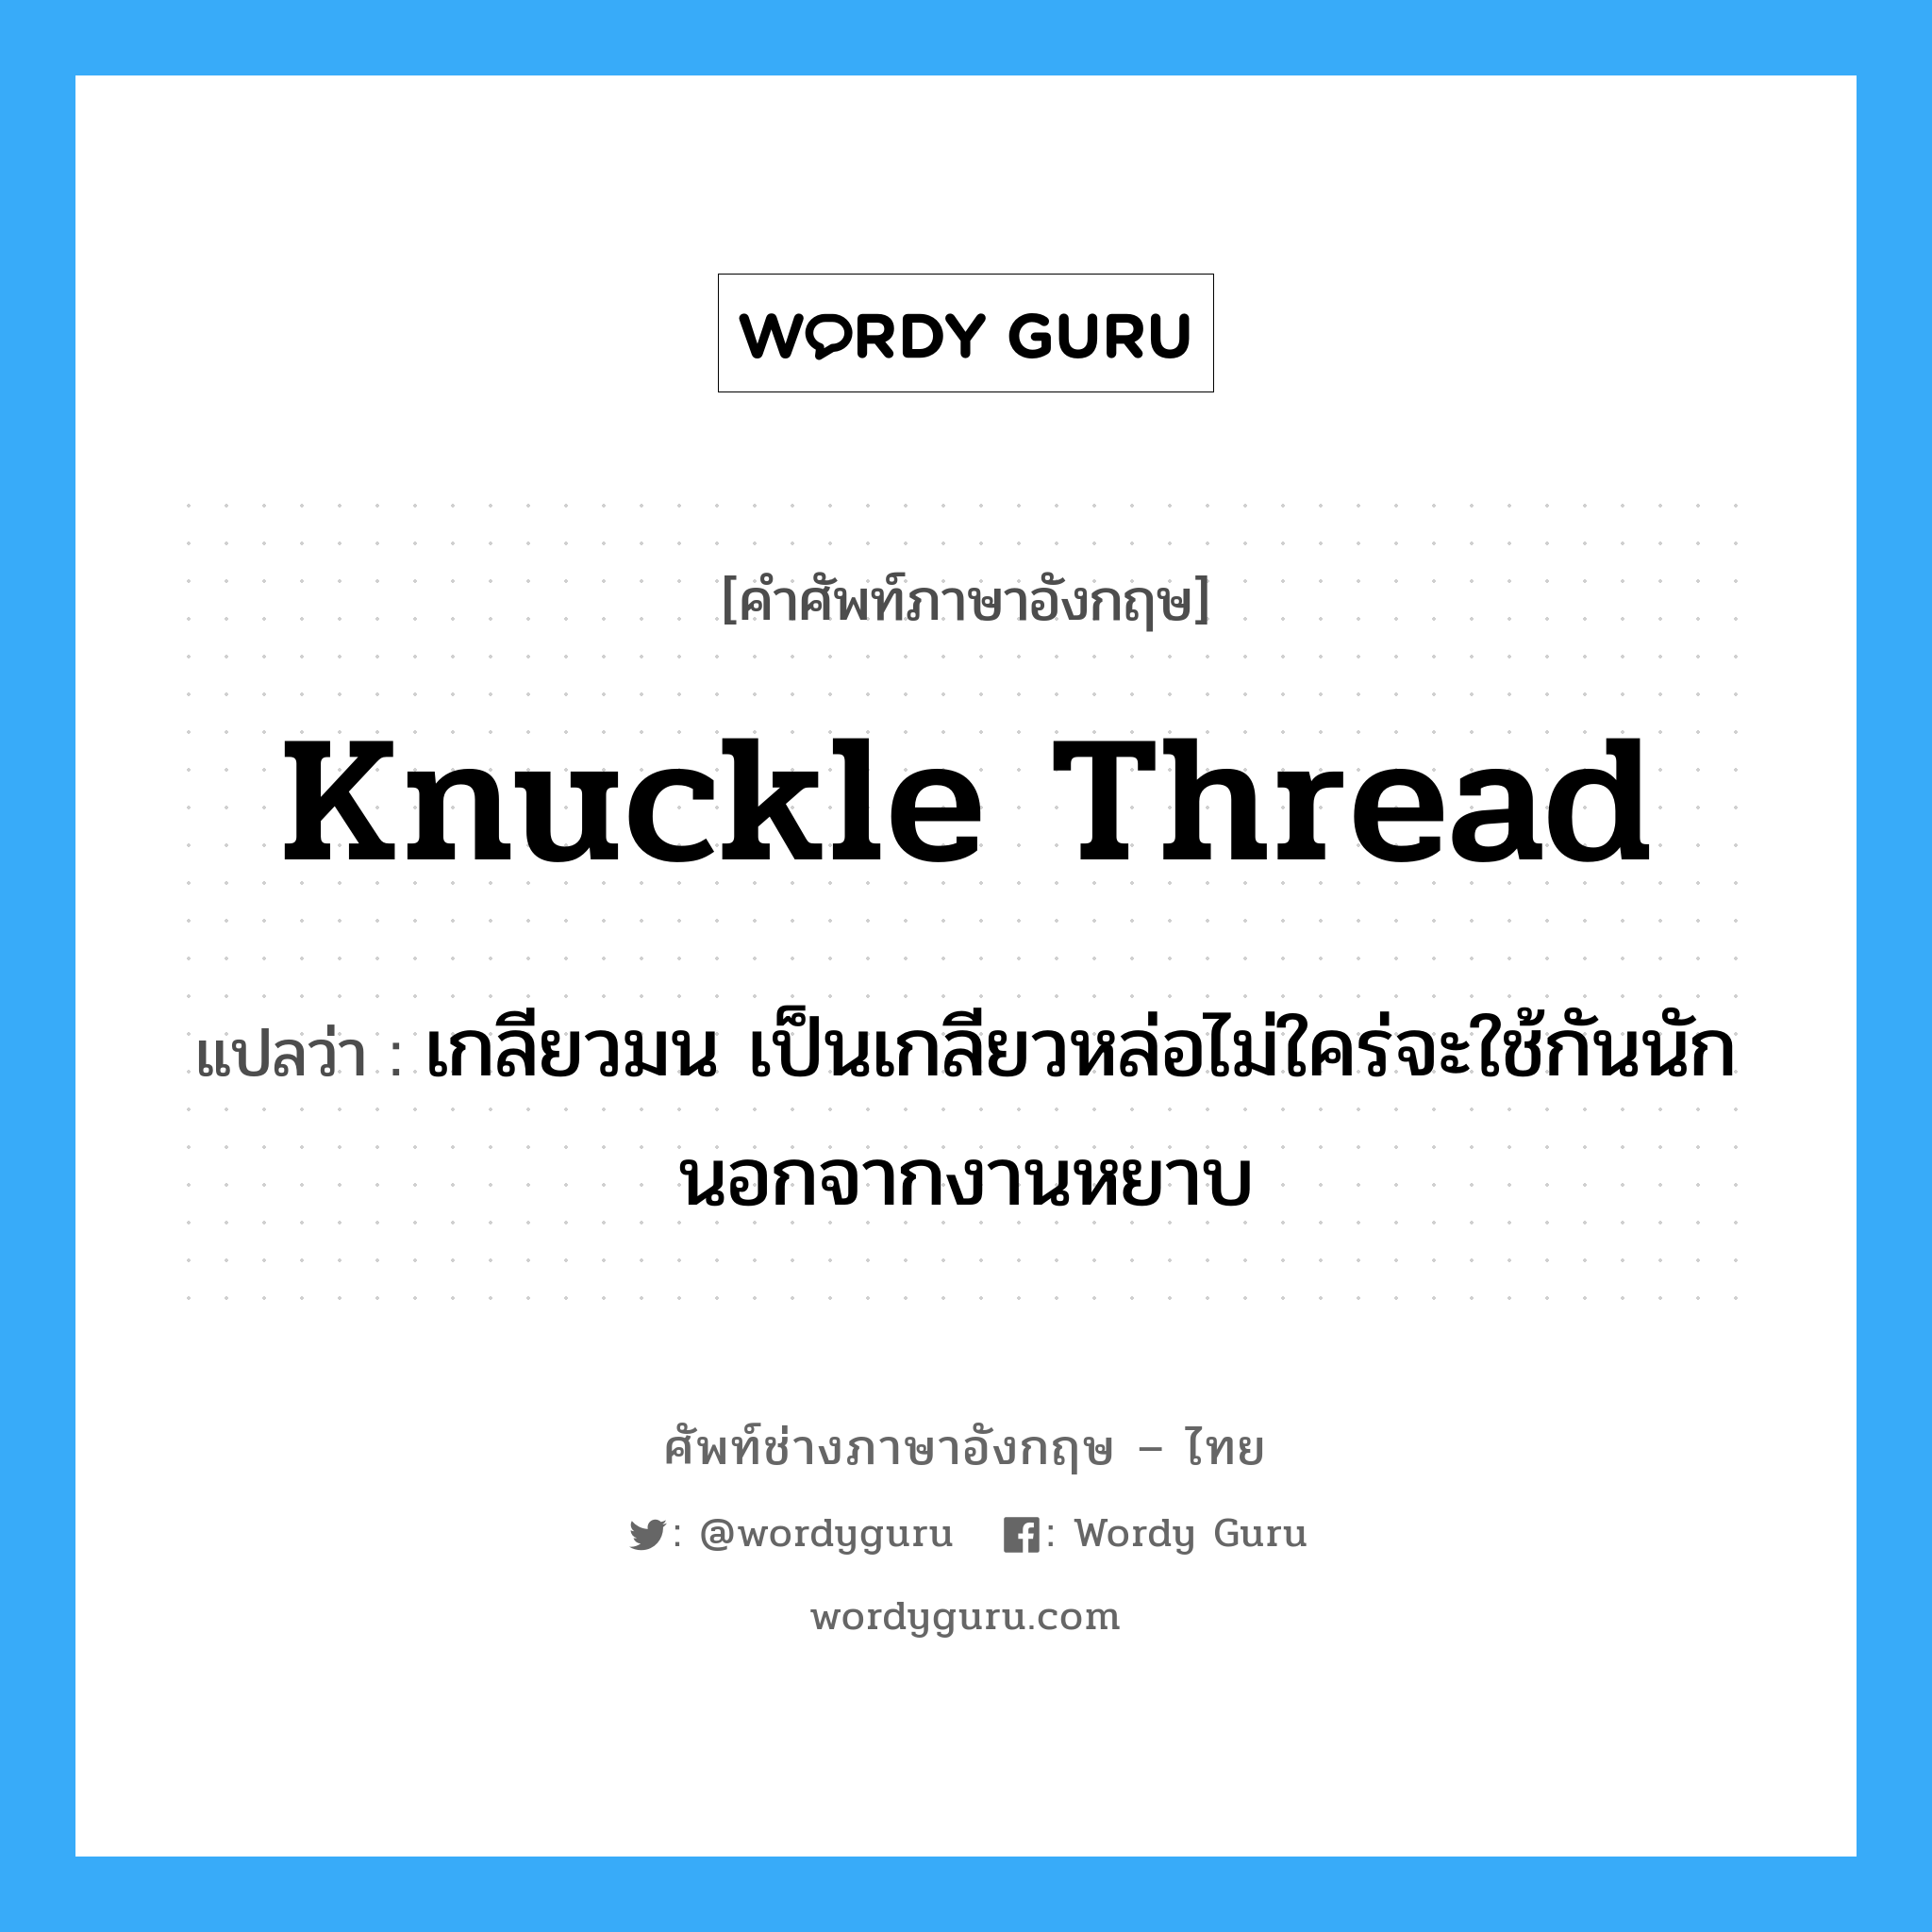 knuckle thread แปลว่า?, คำศัพท์ช่างภาษาอังกฤษ - ไทย knuckle thread คำศัพท์ภาษาอังกฤษ knuckle thread แปลว่า เกลียวมน เป็นเกลียวหล่อไม่ใคร่จะใช้กันนักนอกจากงานหยาบ